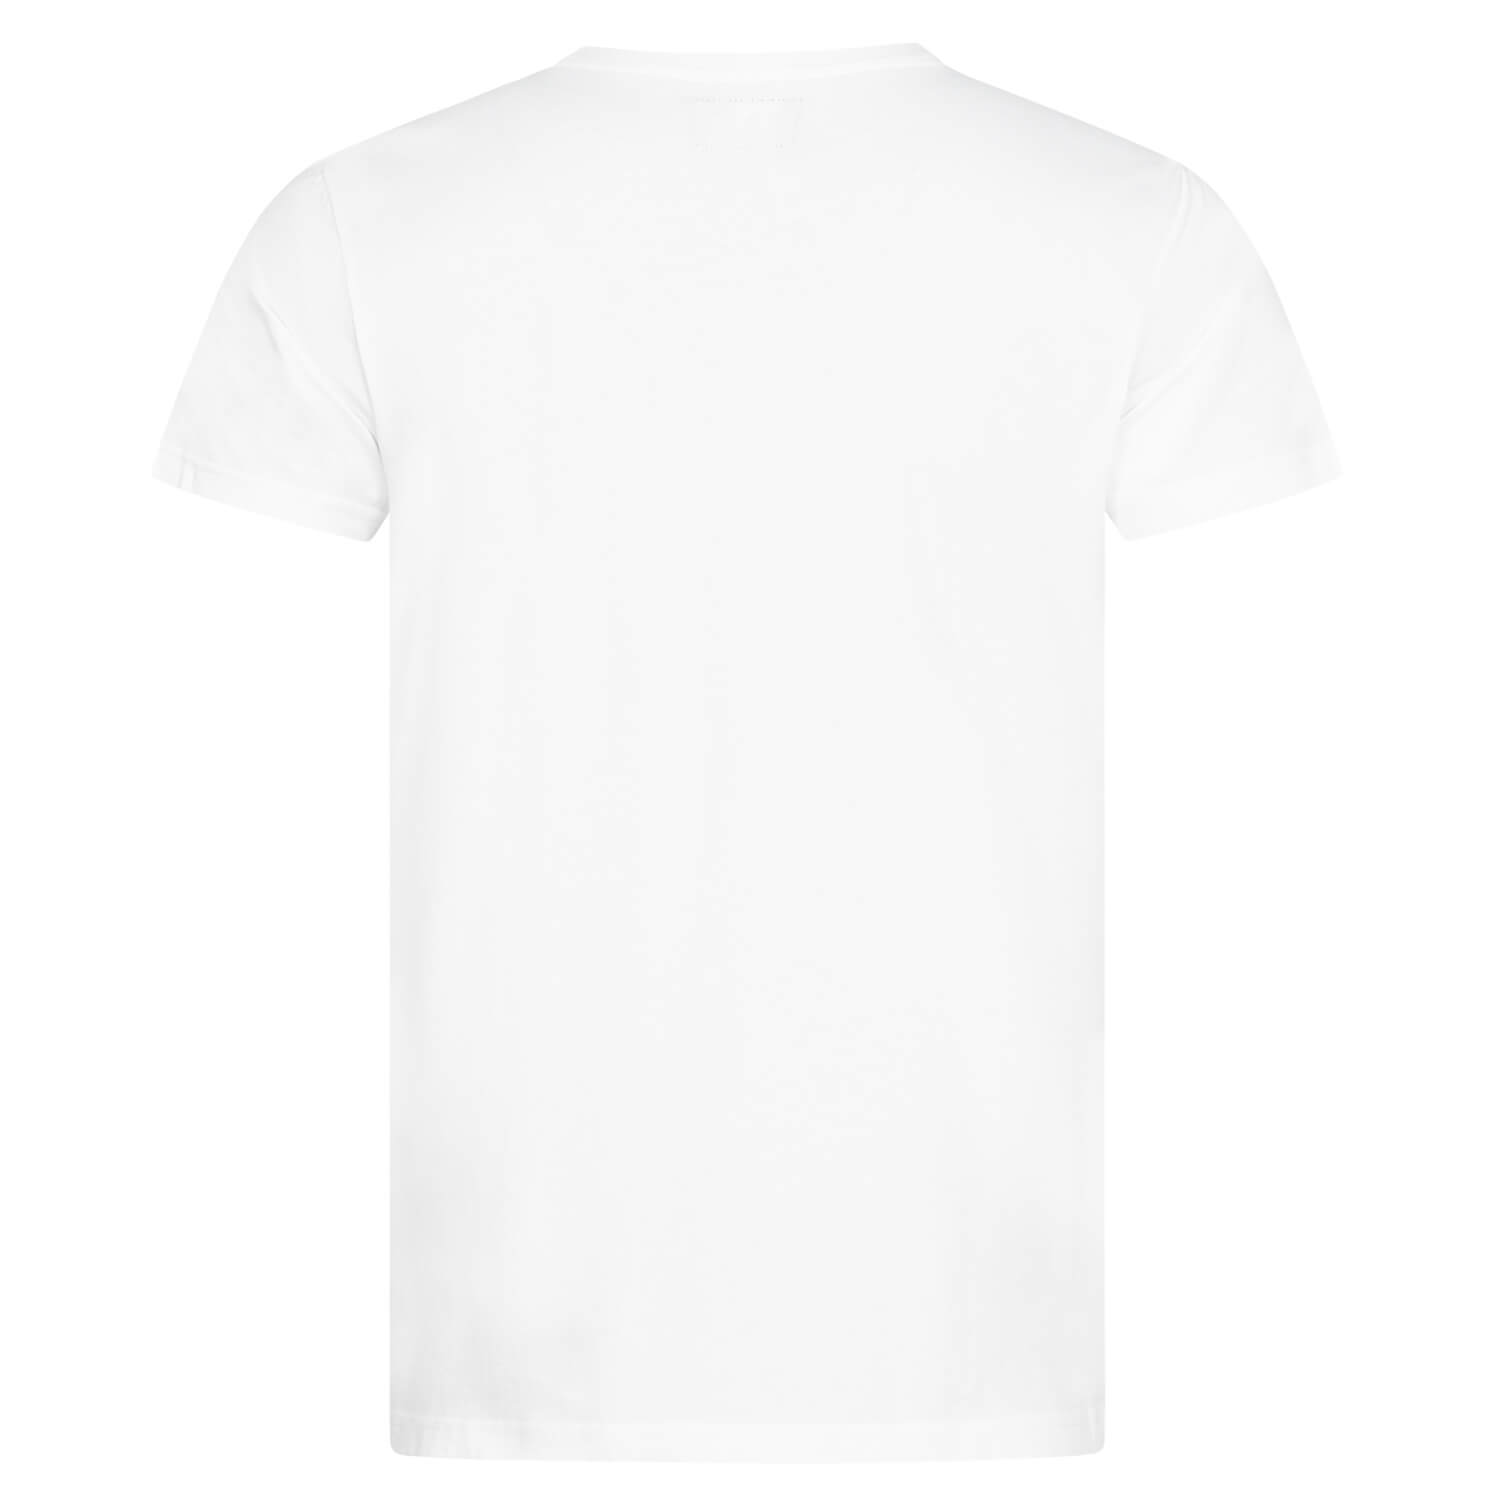 Bild 2: T-Shirt 125 Jahre Logo White